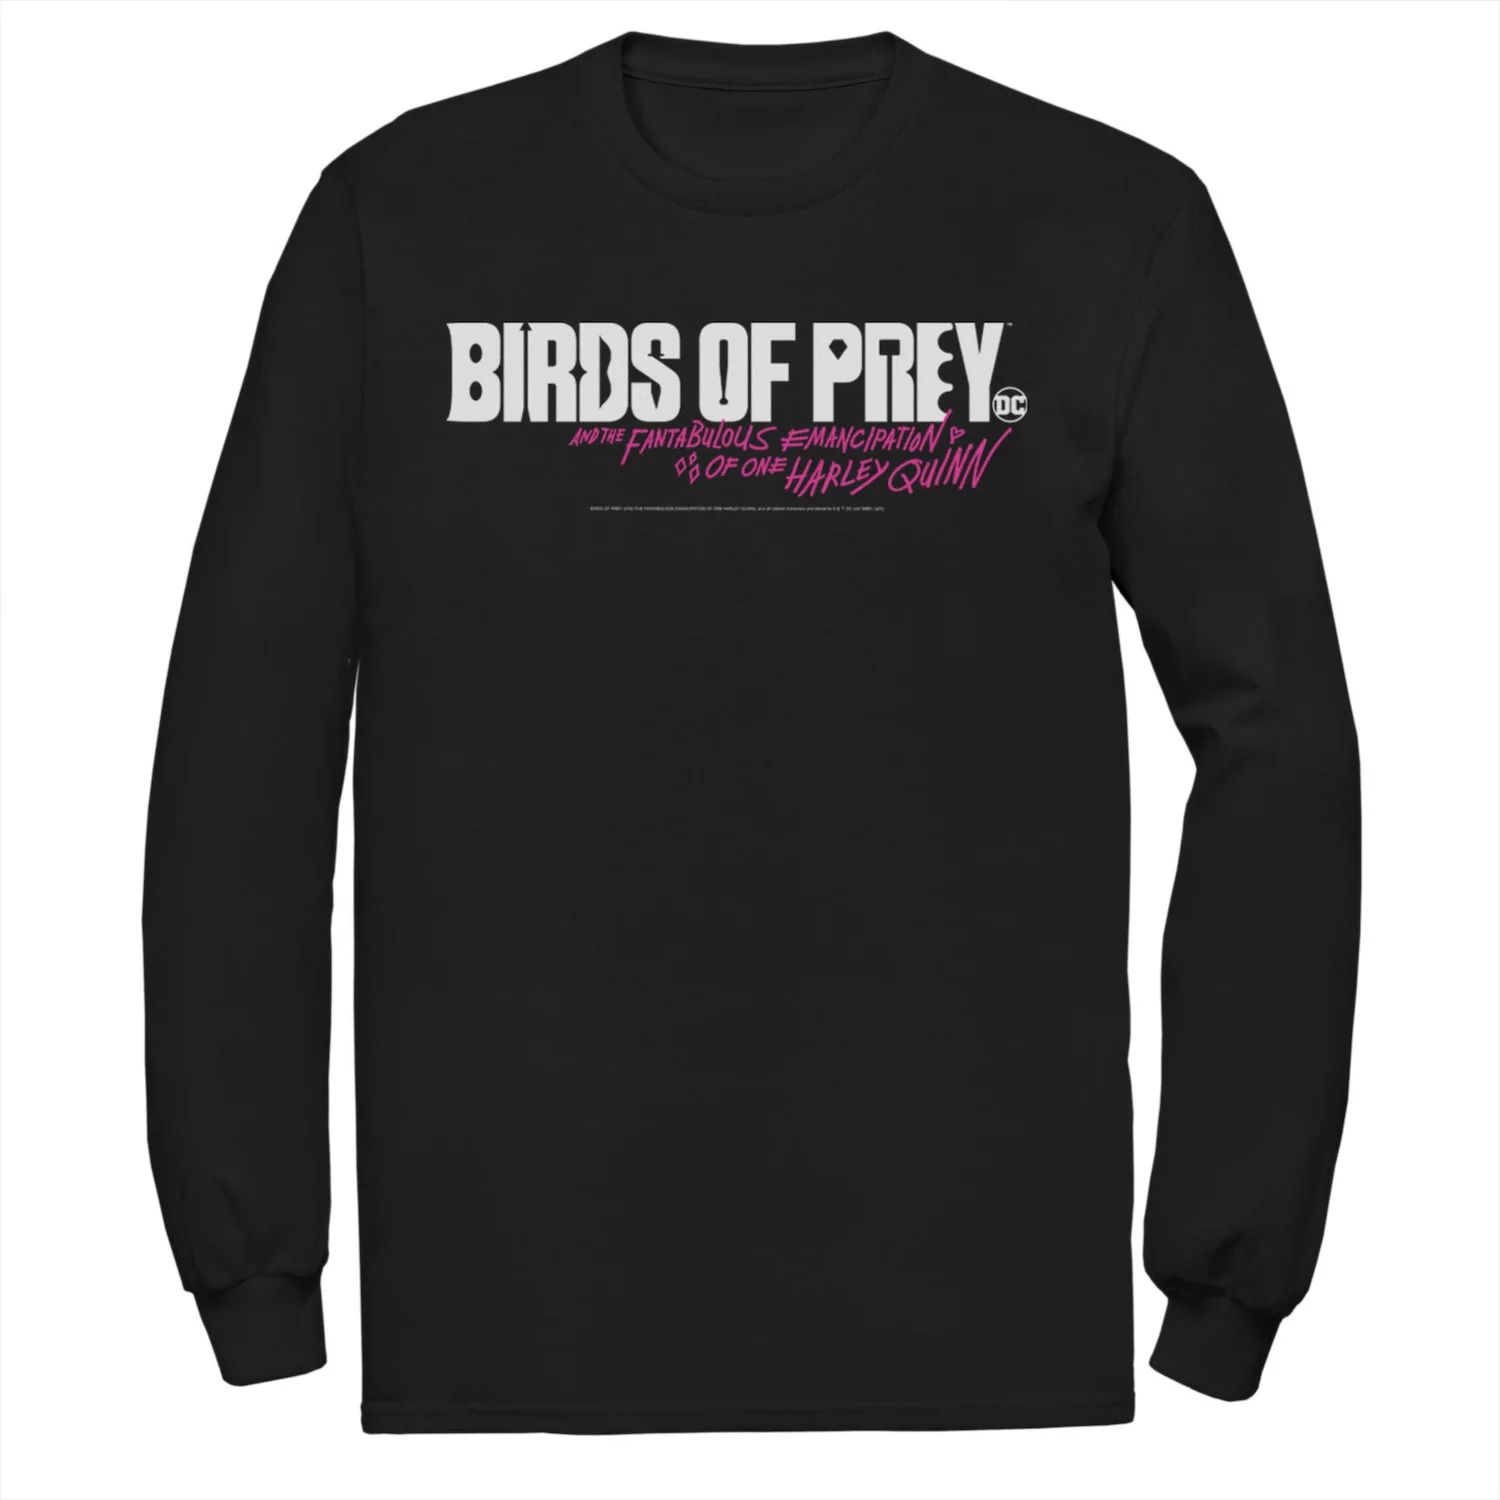 Мужская футболка с простым текстовым логотипом «Хищные птицы» DC Comics наклейка патч для одежды priority dc хищные птицы